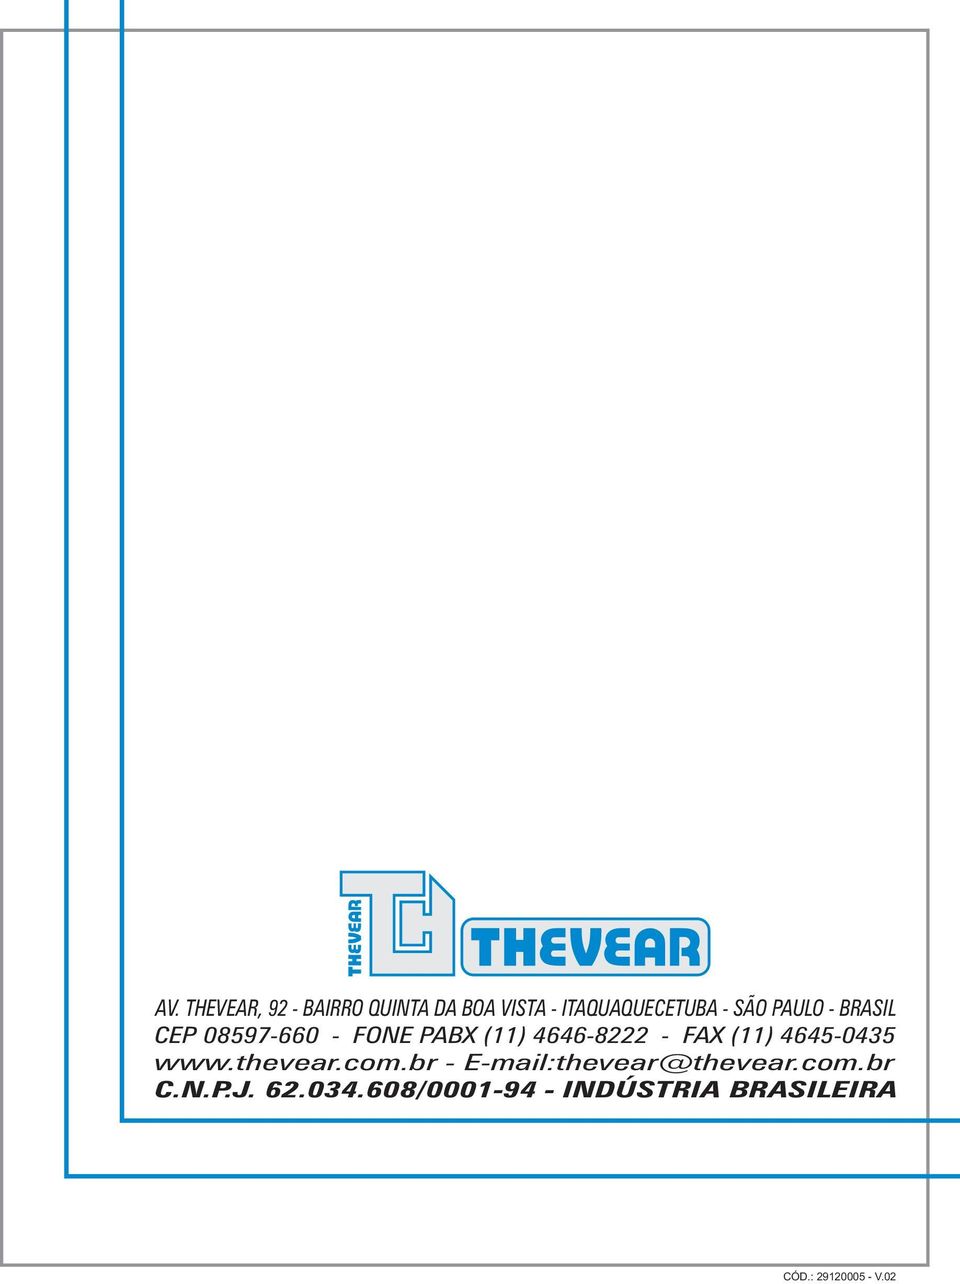 (11) 4645-0435 www.thevear.com.br - E-mail:thevear@thevear.com.br C.